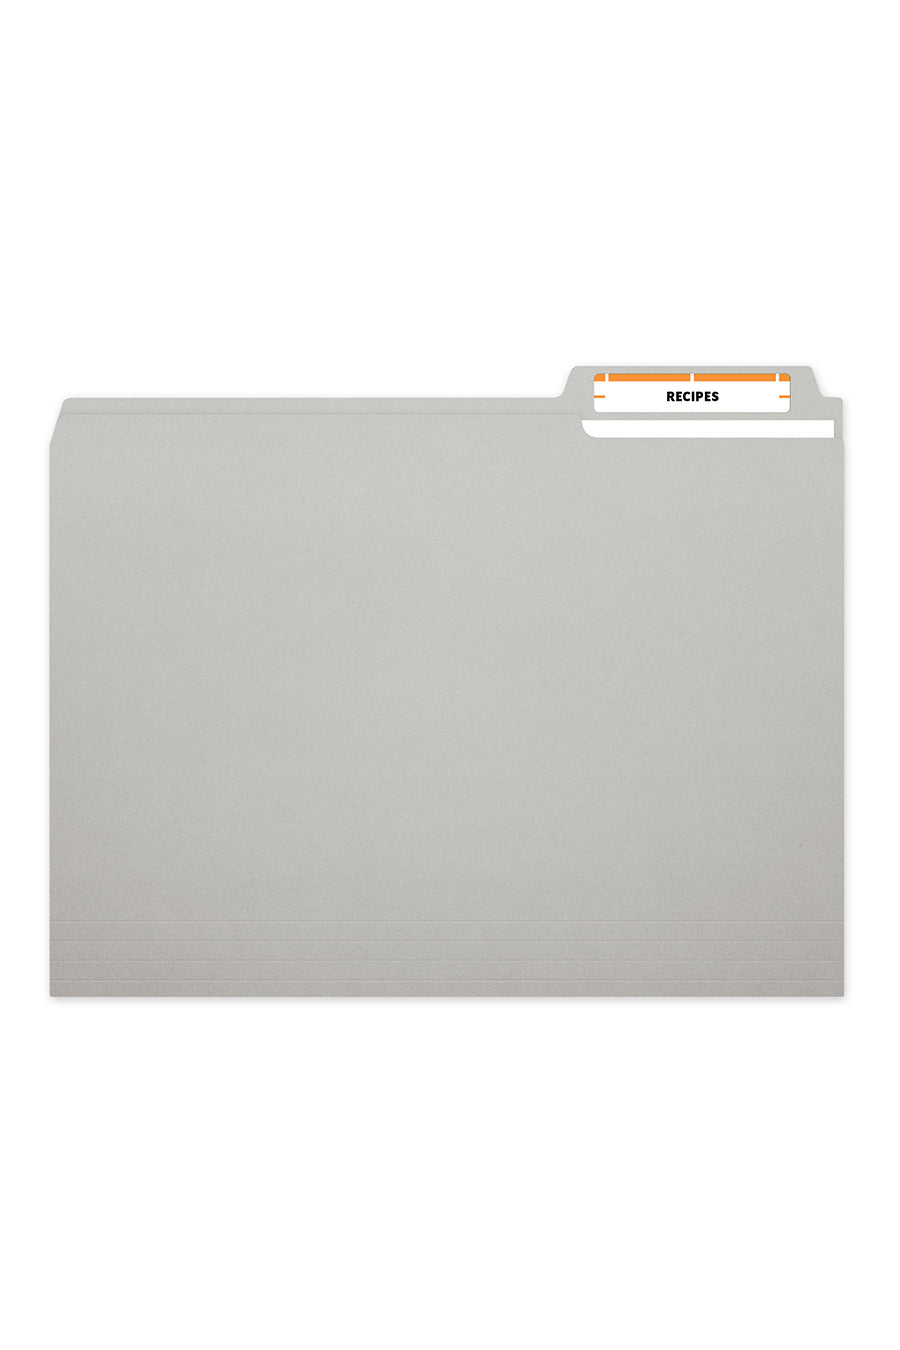 Laser/Ink Jet Orange File Folder Labels, 2/3" x 3-7/16", 30/Sheet, 1500 Labels/Bx